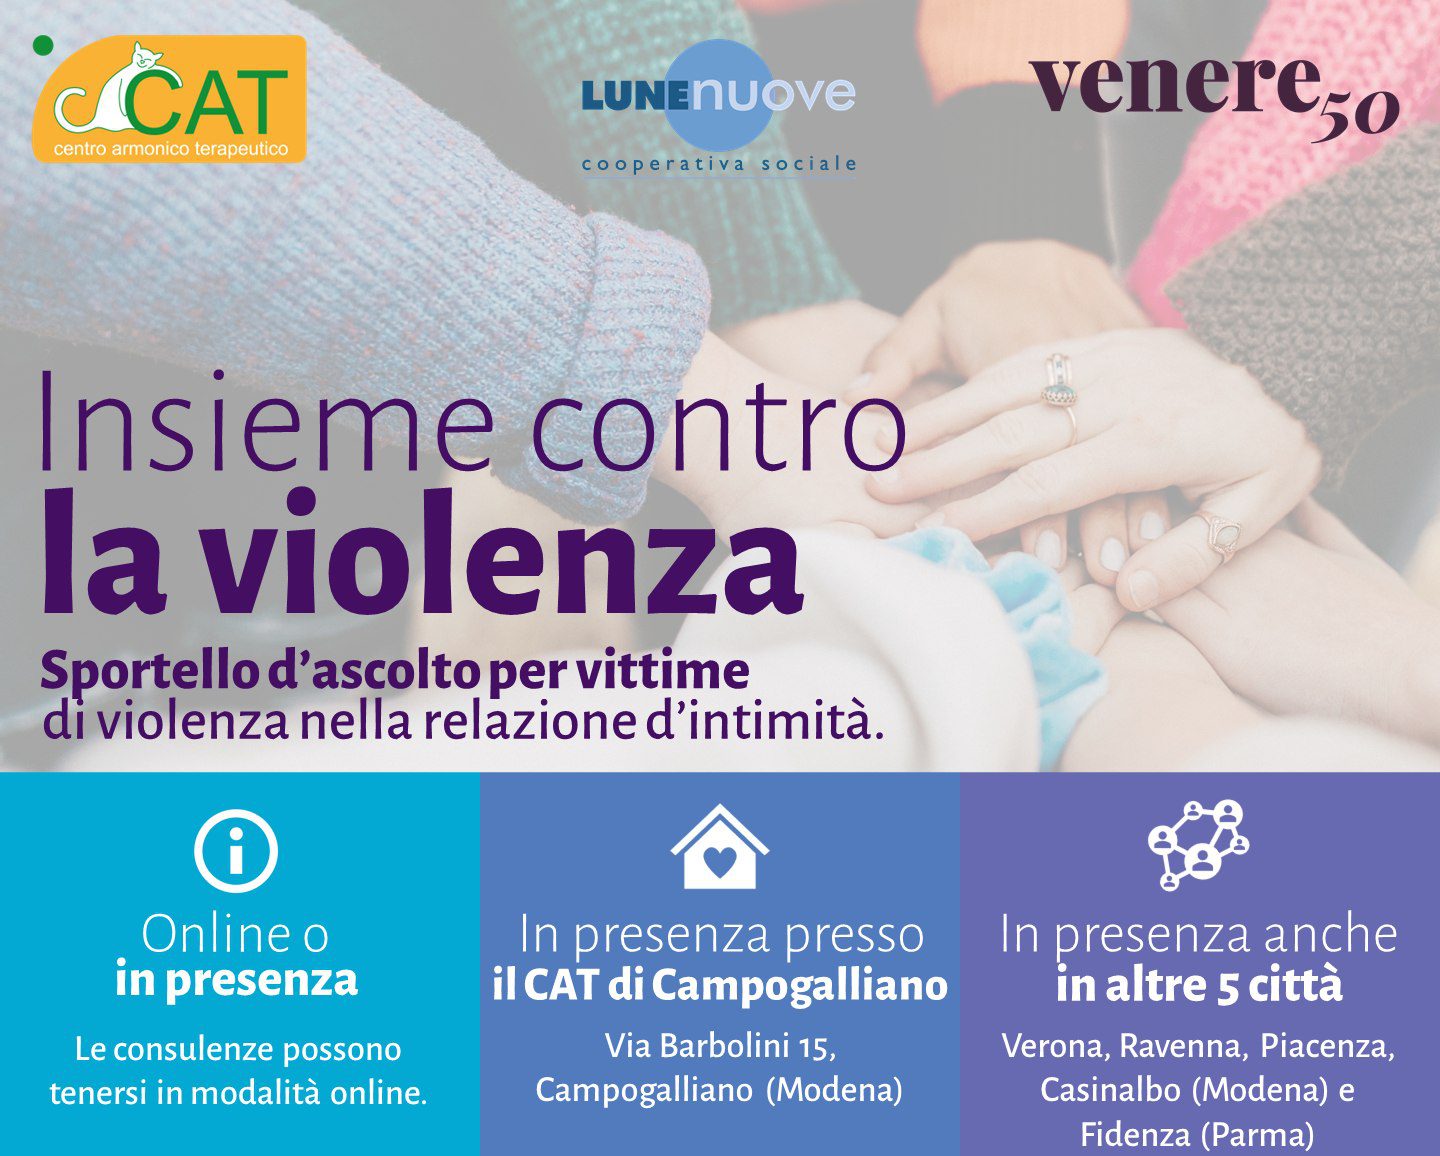 CAT Centro Armonico Terapeutico presenta lo Sportello d’ascolto per vittime di violenza nella relazione d’intimità